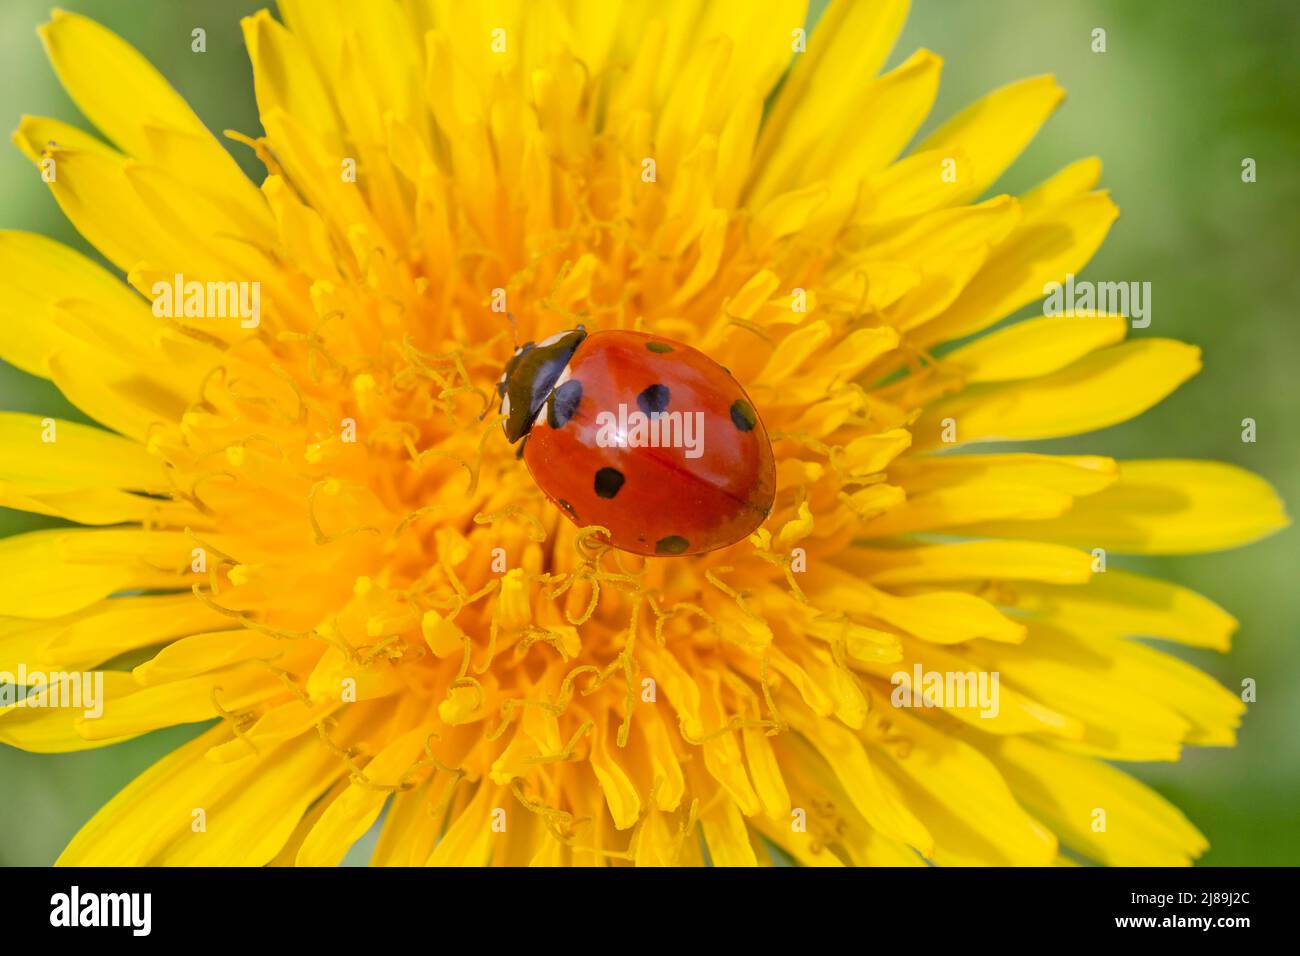 Nahaufnahme eines roten Marienkäfer, der auf einer gelben Dandelionenblume sitzt Stockfoto